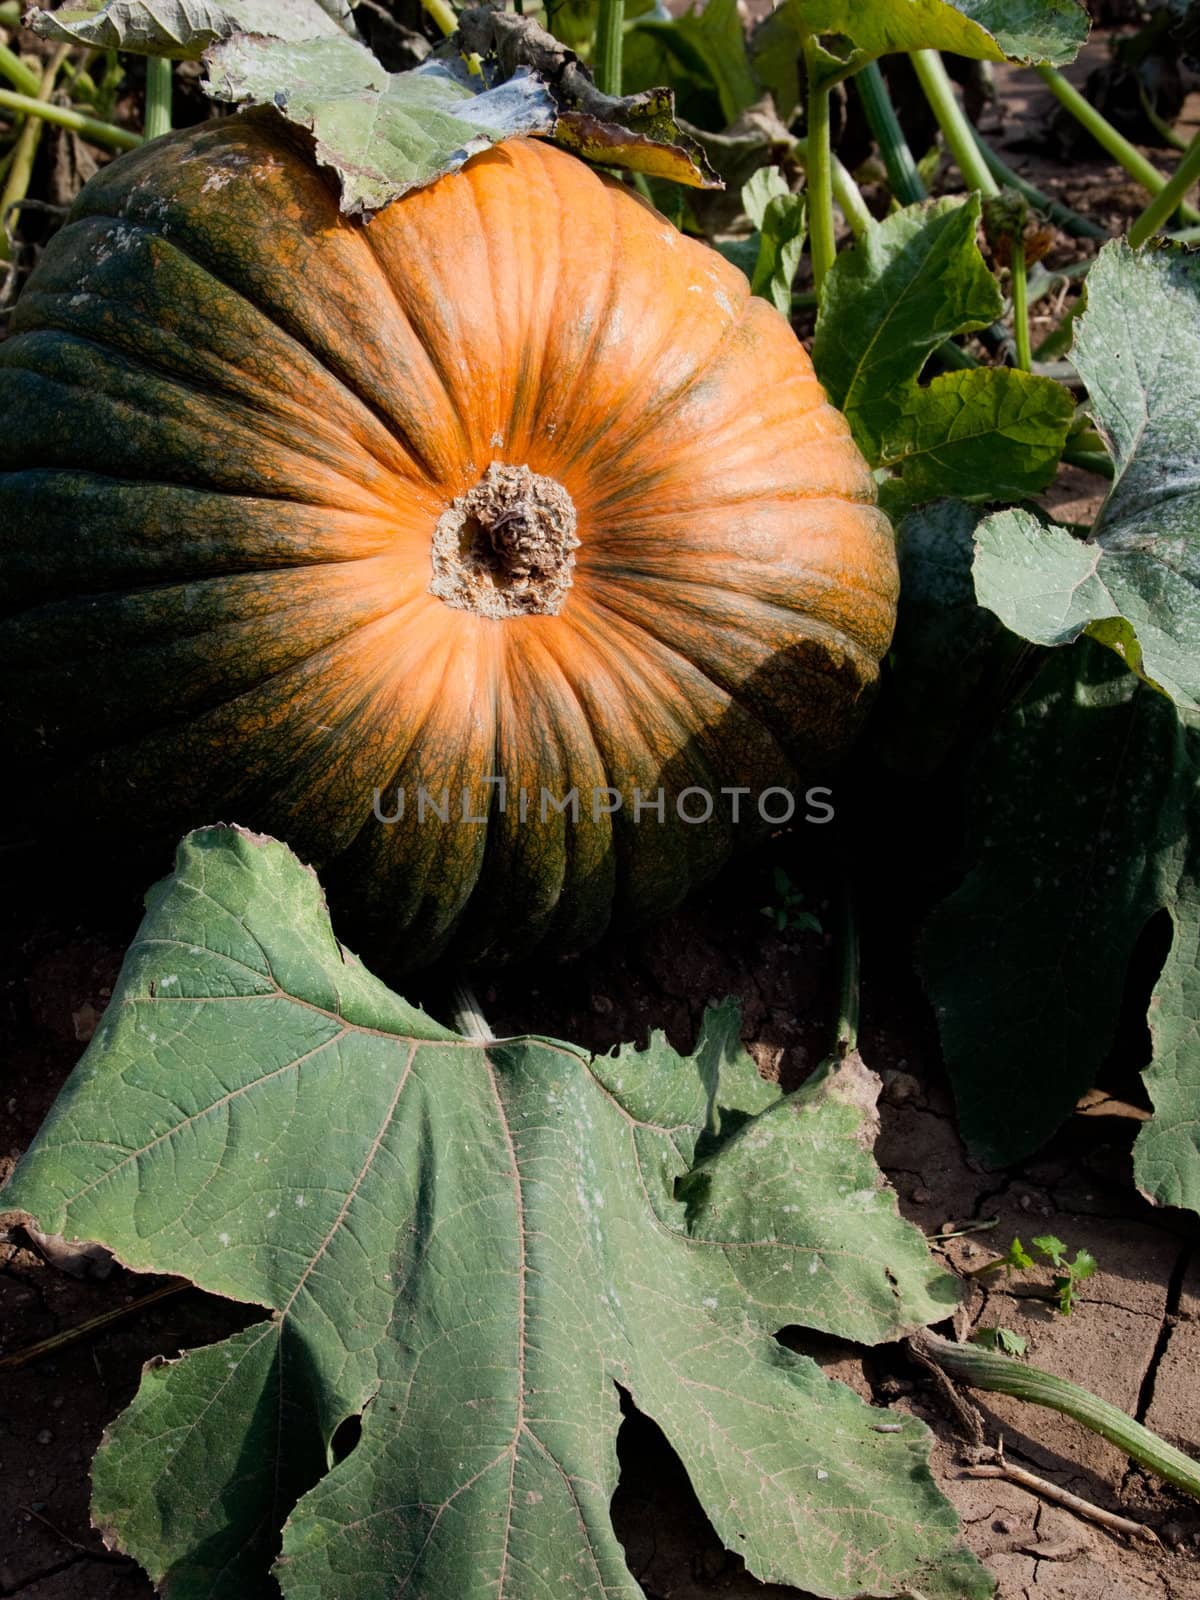 Pumpkin growing in a field on the vine